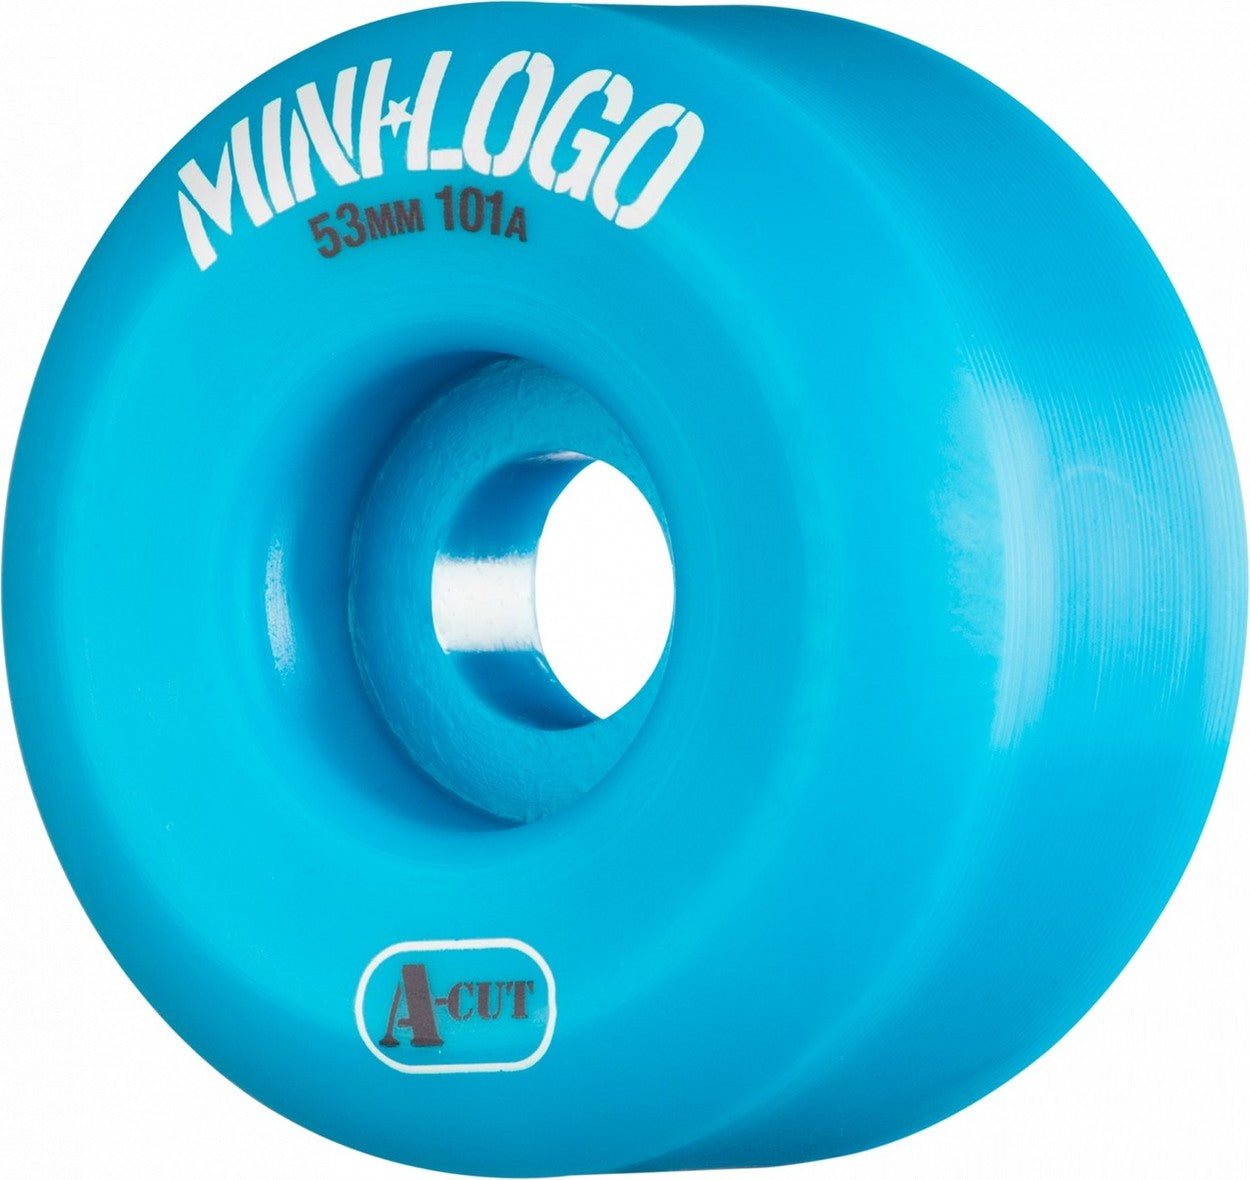 Mini Logo A-Cut 101a Skateboard Wheels - Blue